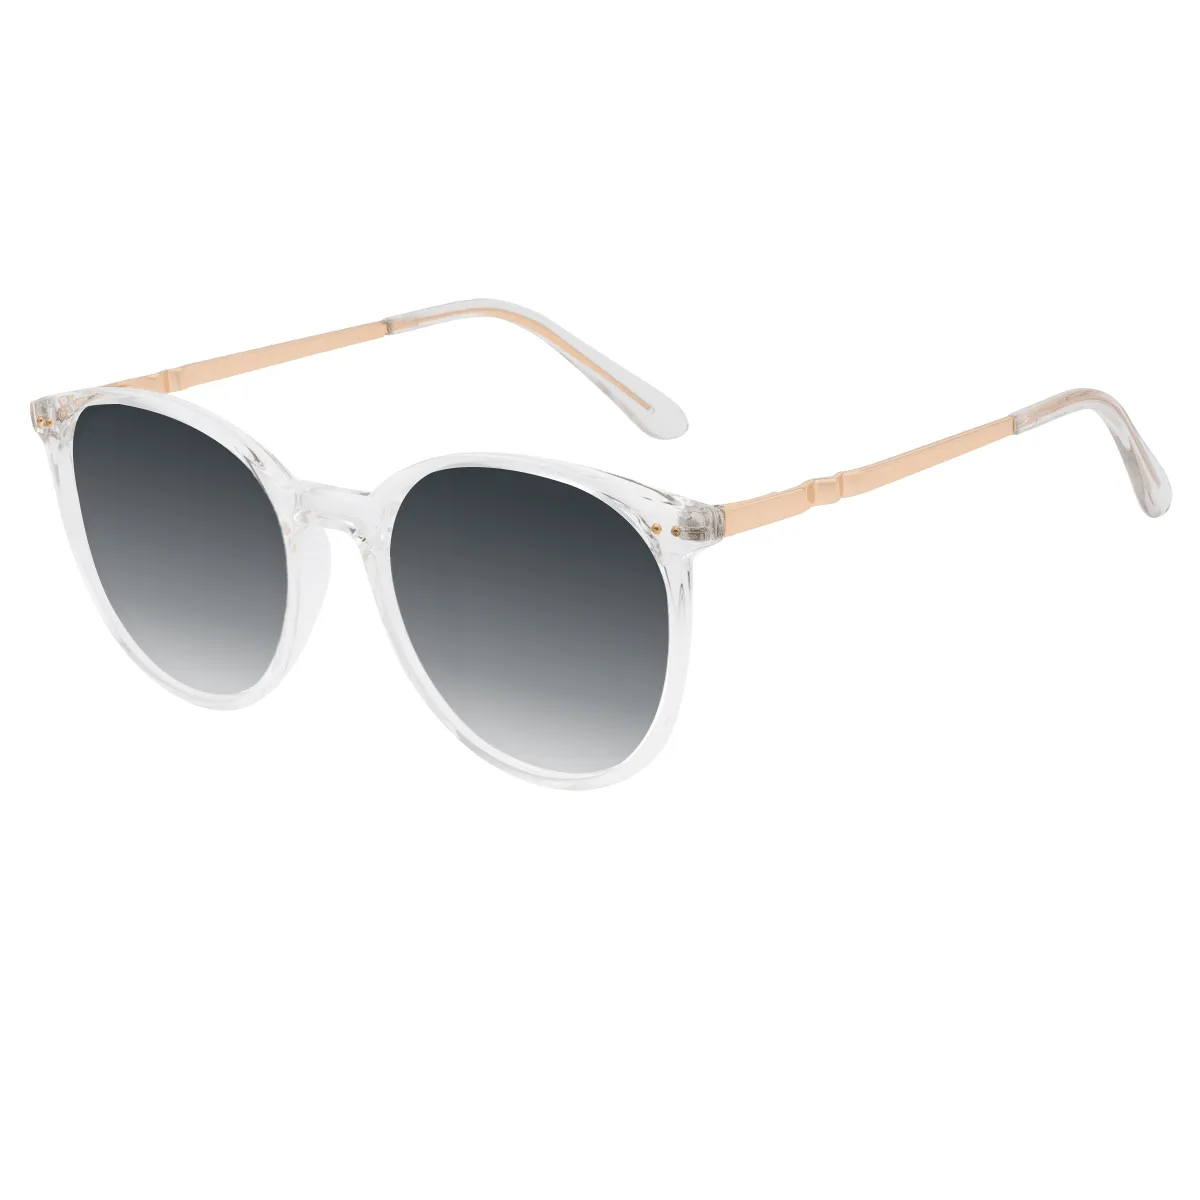 Calderon - Round Transparent Sunglasses for Men & Women